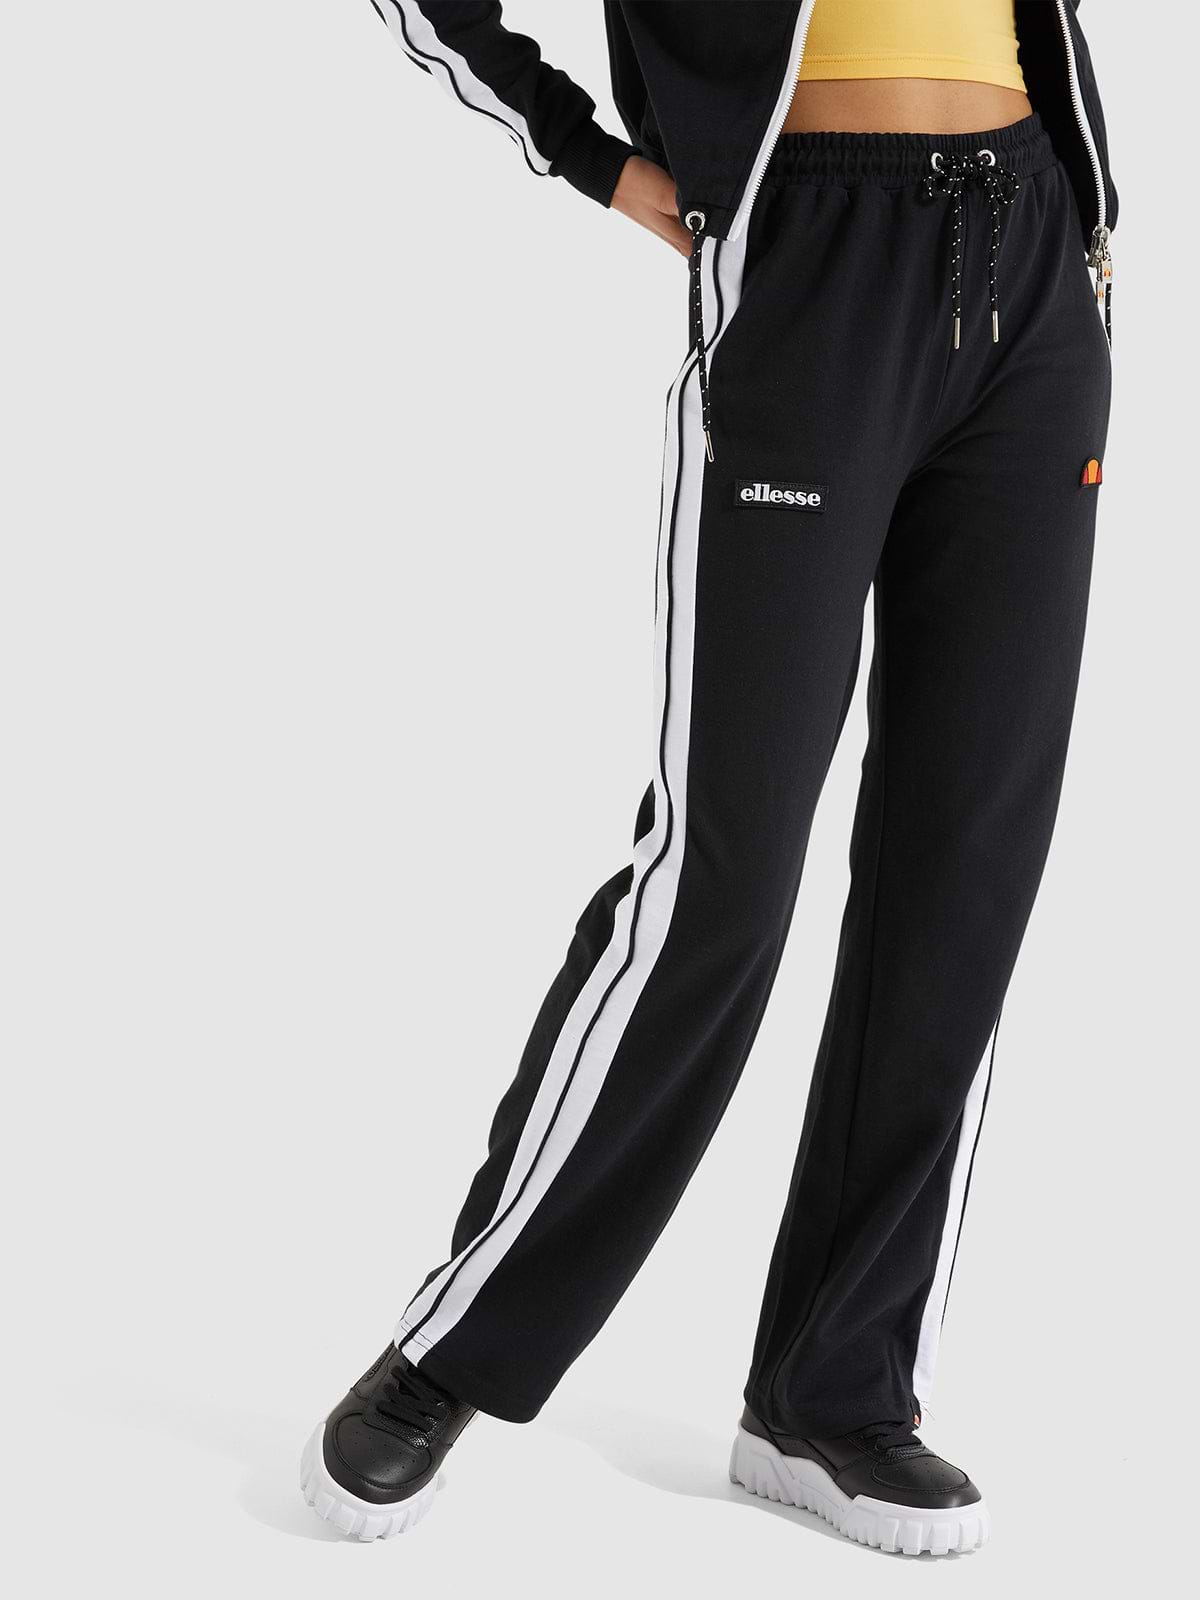 מכנסיים ספורטיביים עם תווית לוגו- Ellesse|אלס